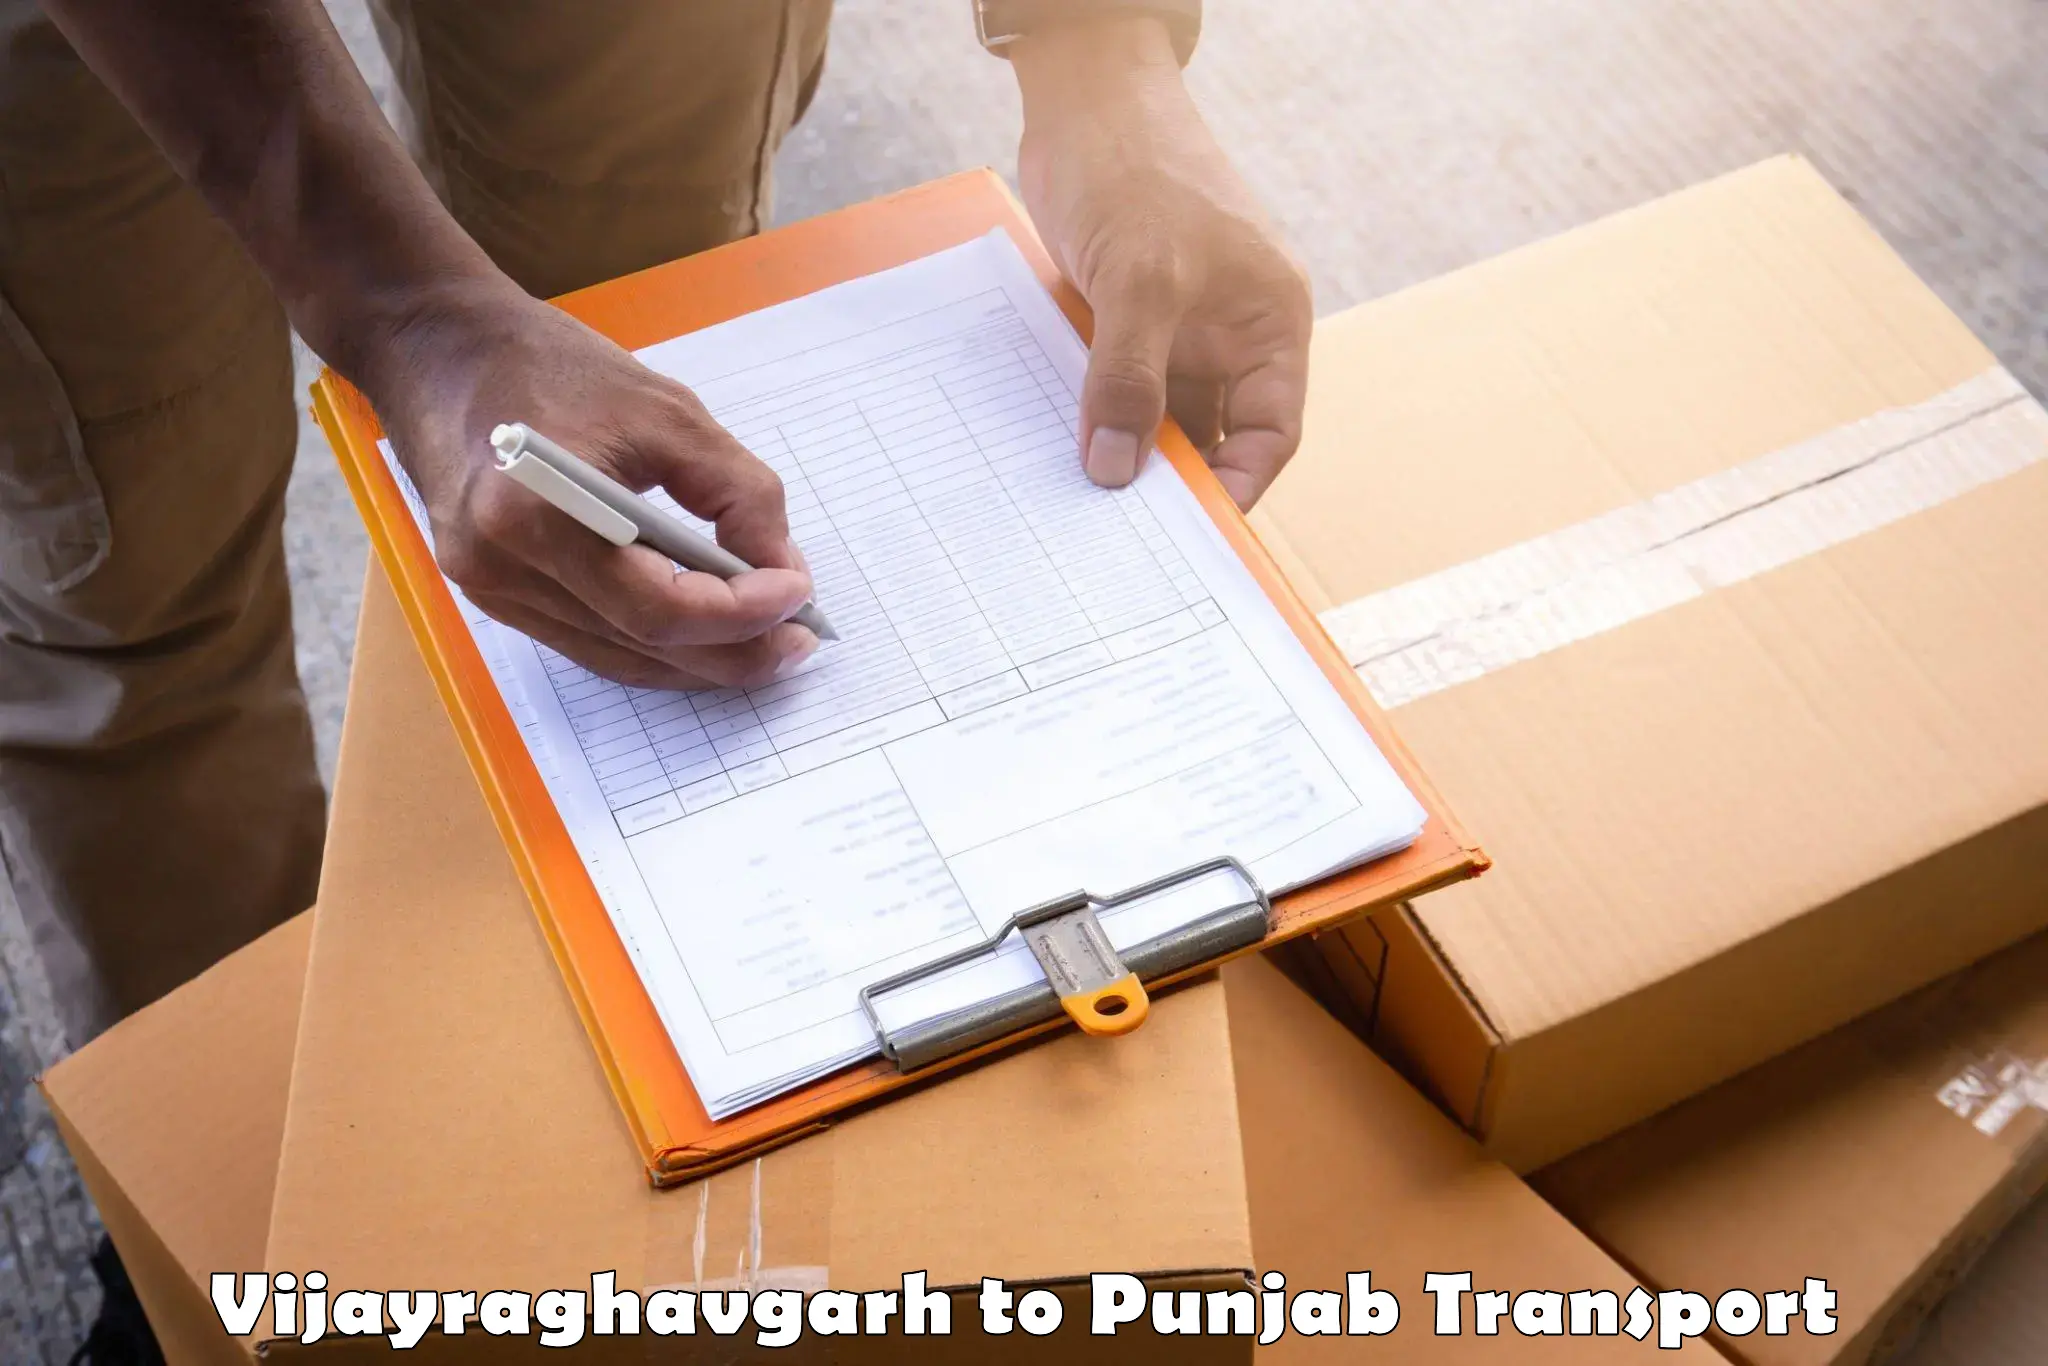 Cargo transport services in Vijayraghavgarh to Mohali